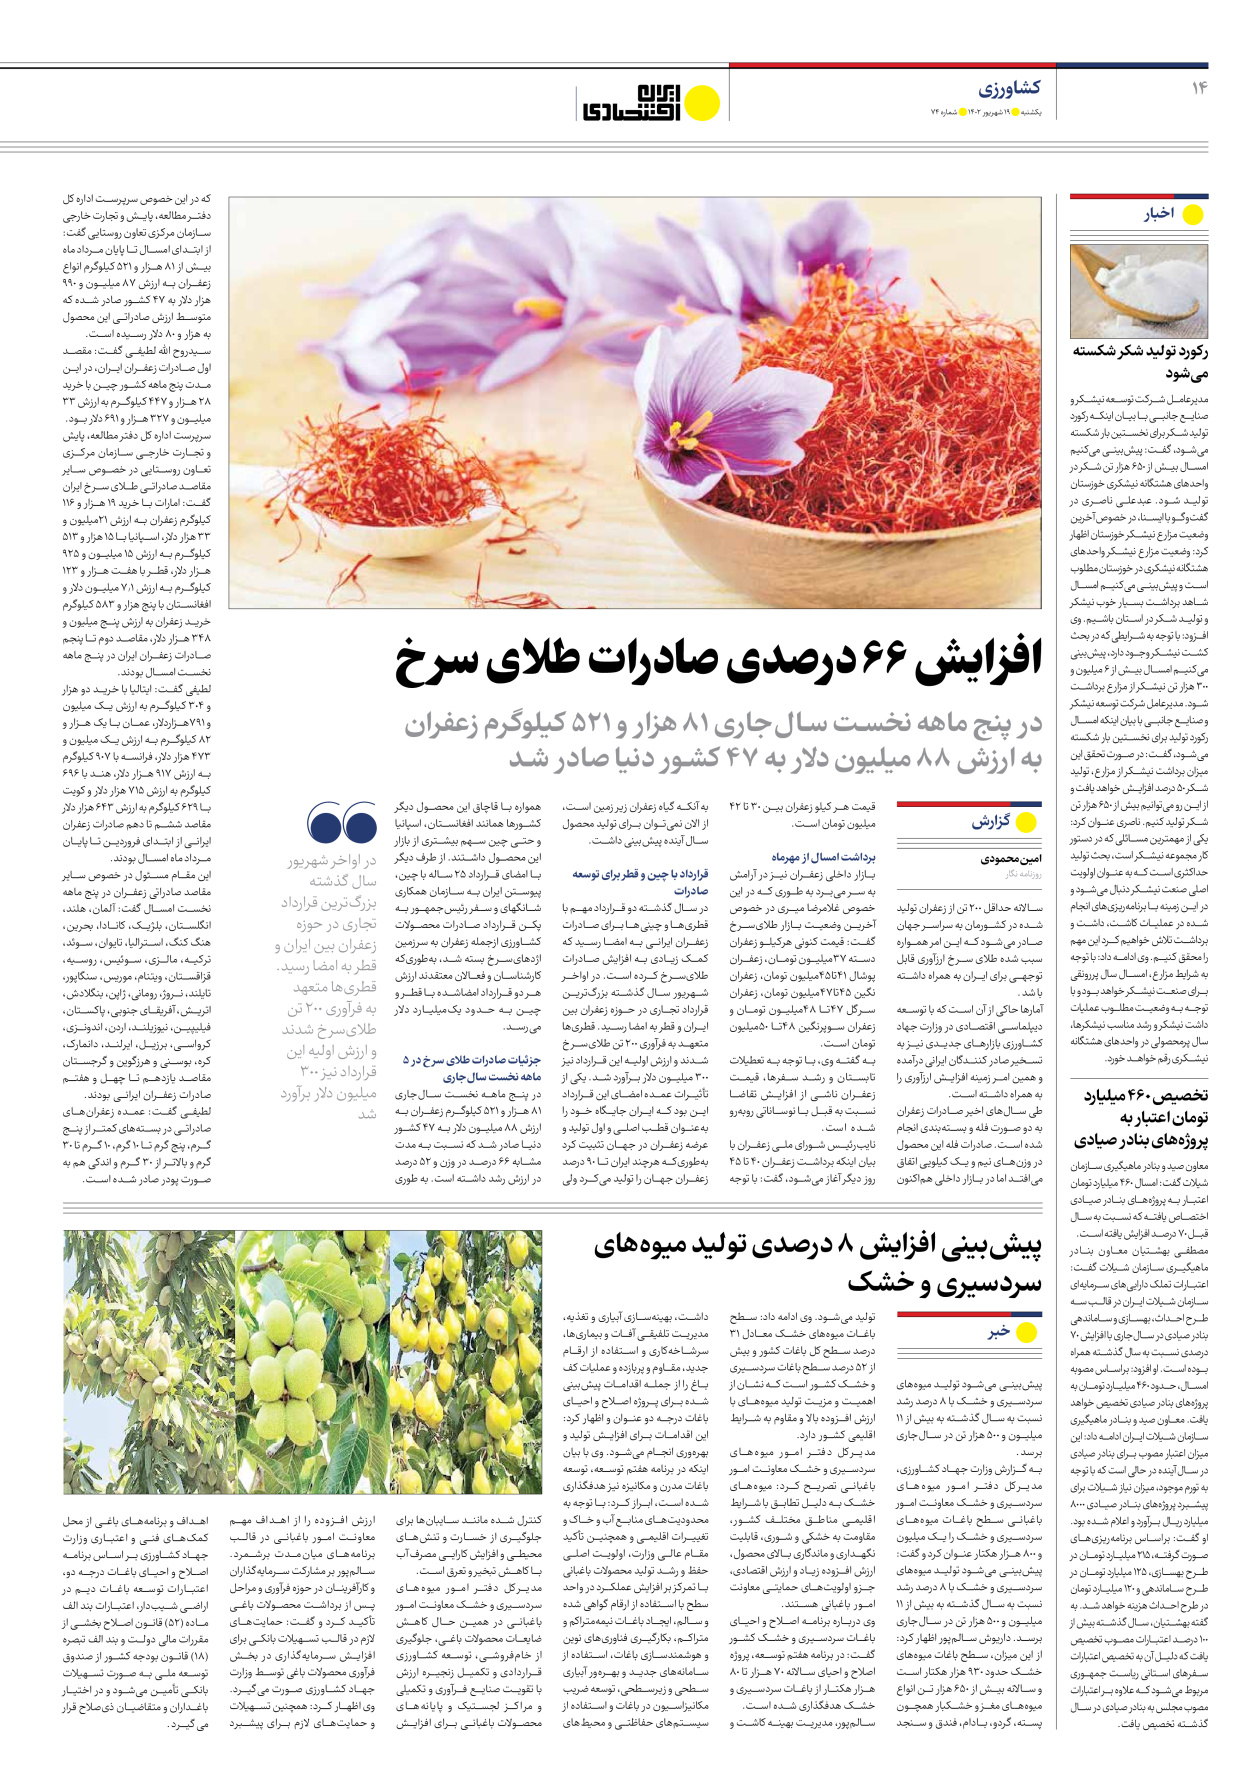 روزنامه ایران اقتصادی - شماره هفتاد و چهار - ۱۹ شهریور ۱۴۰۲ - صفحه ۱۴